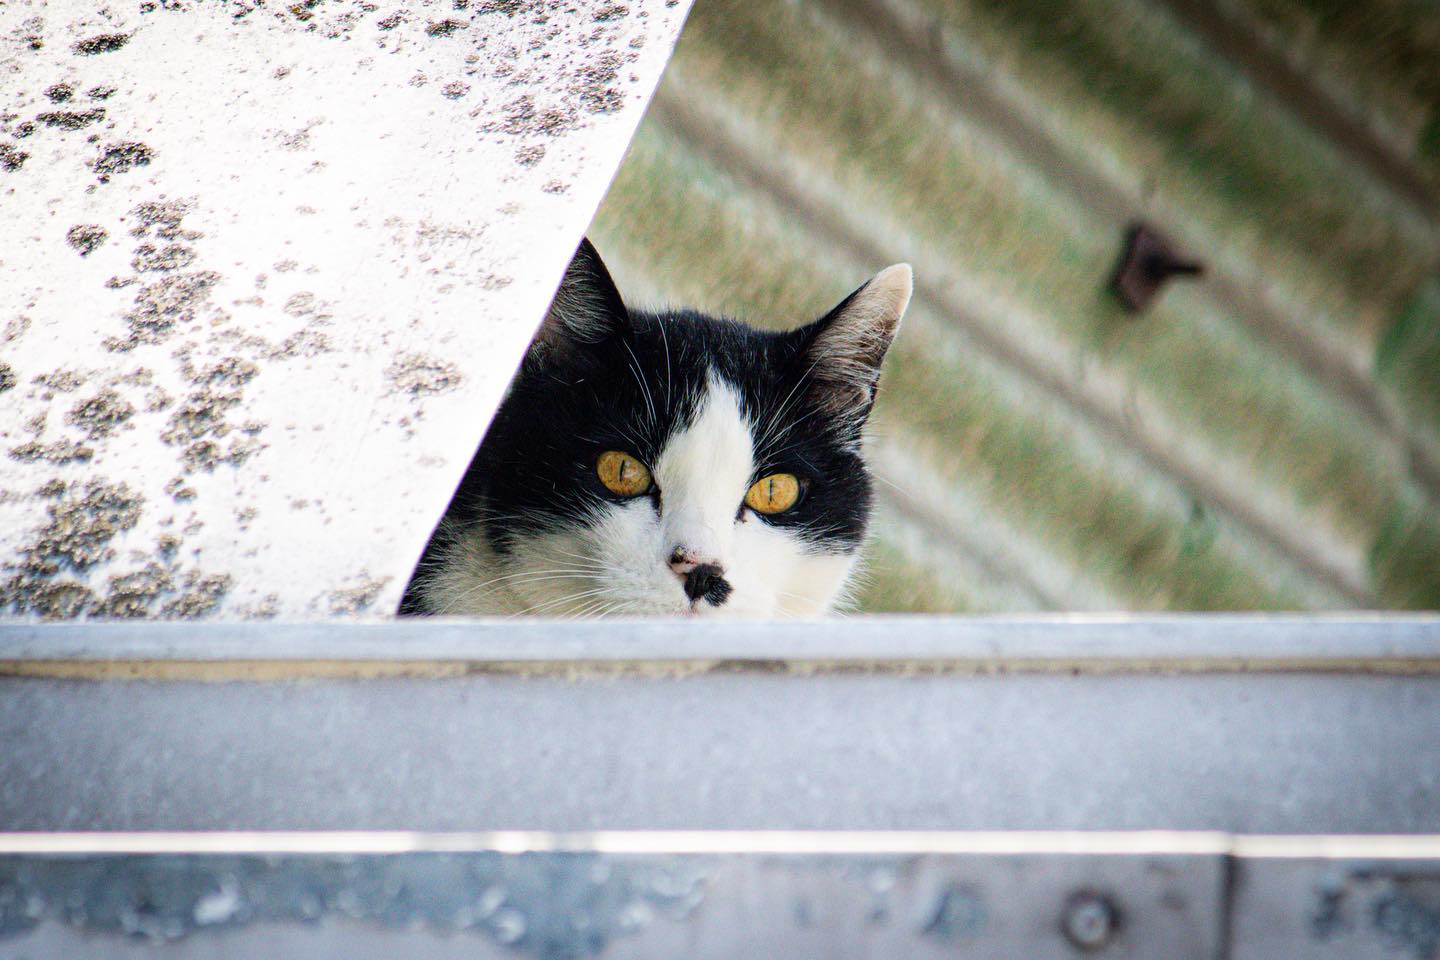 Ti tengo d’occhio! 🫵

#gatto 
#cat 
#lines 
#galliate 
#roof 
#curious 
#curiosity 
#attentialgatto 
#bewareofthecat